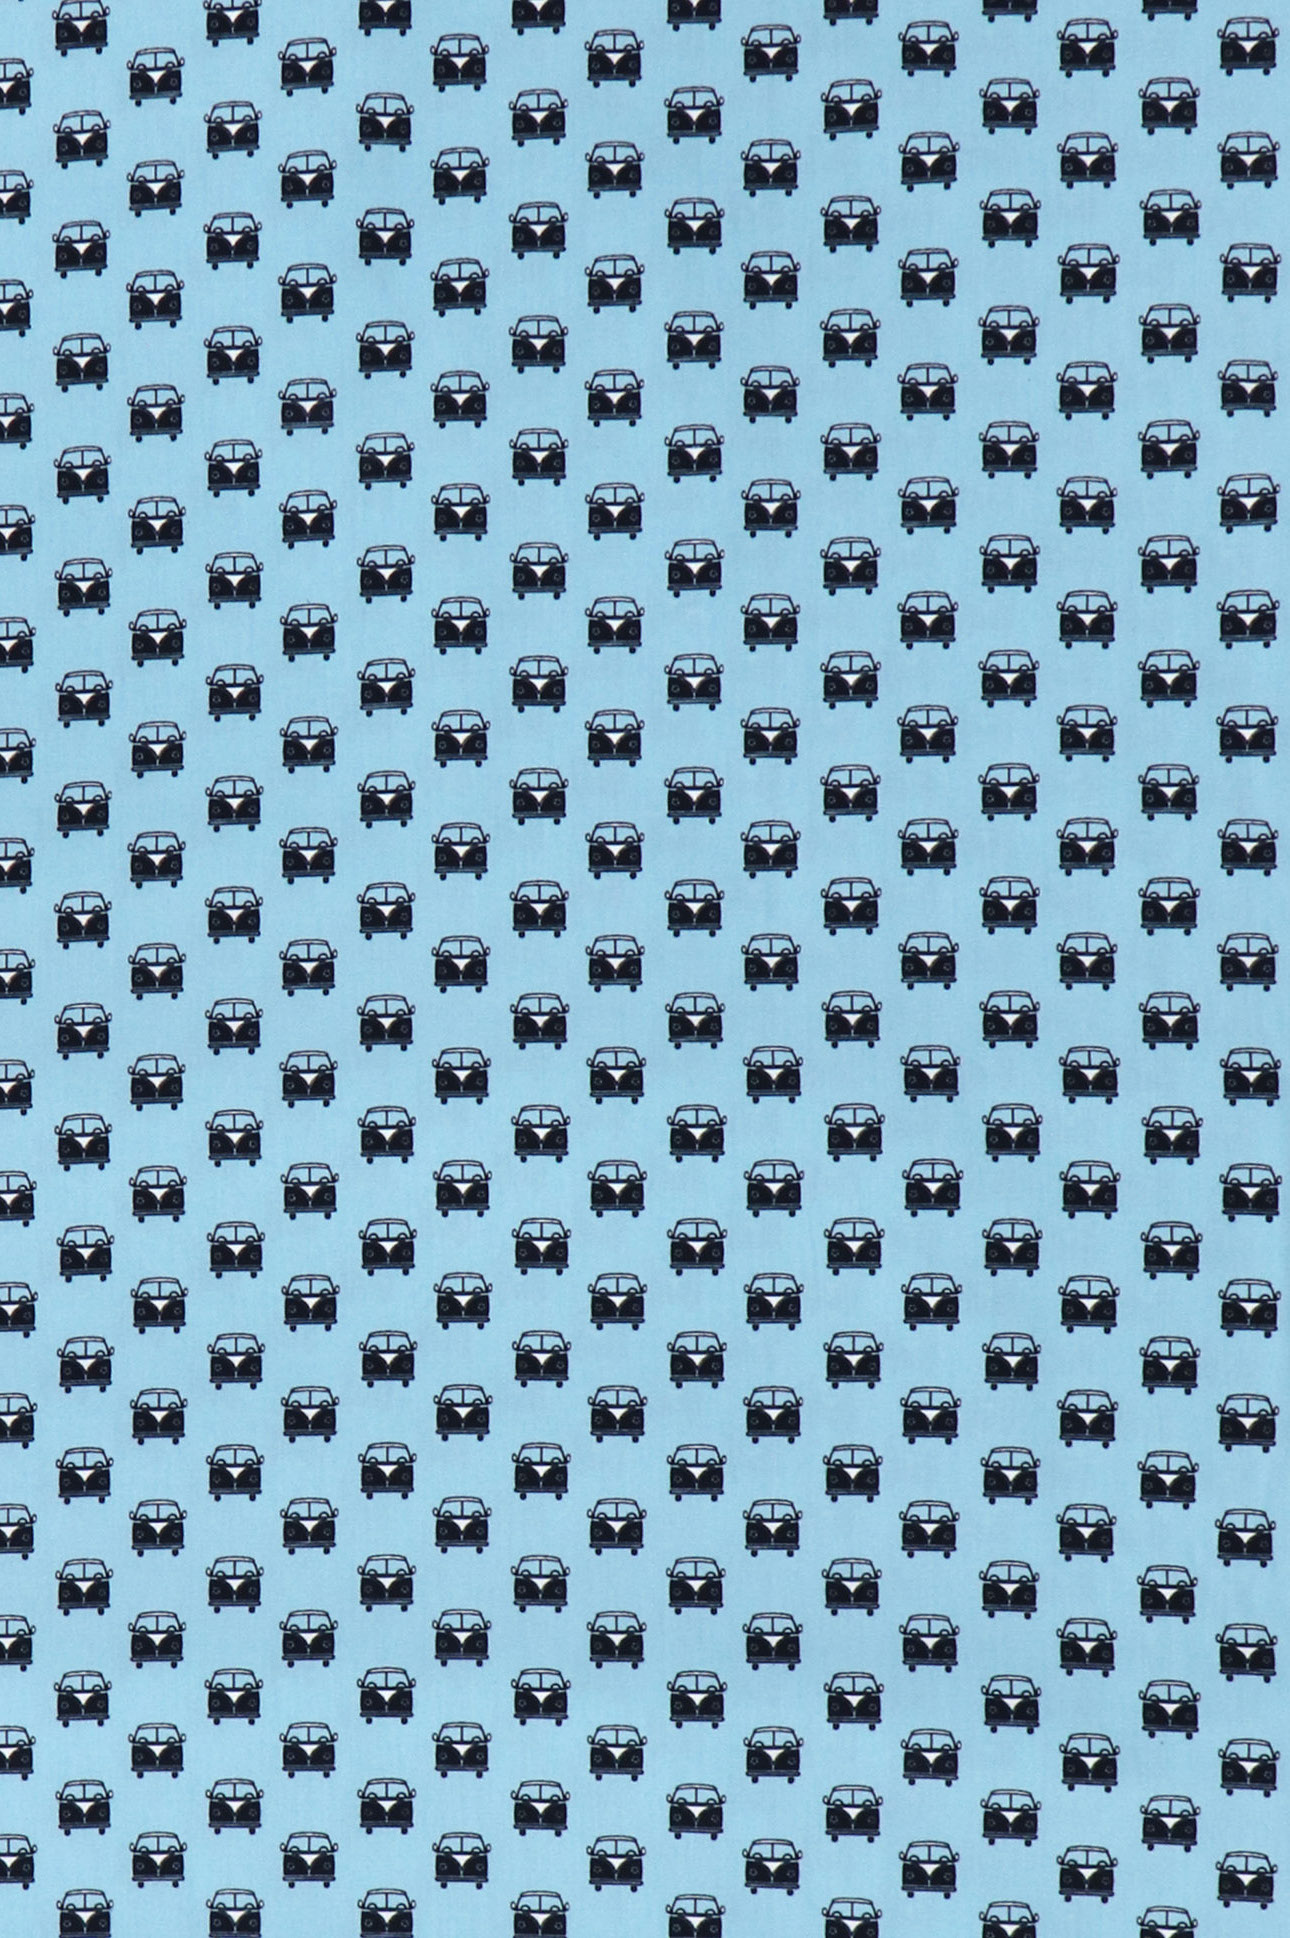 Popeline di cotone, "Bulli" su fondo azzurro